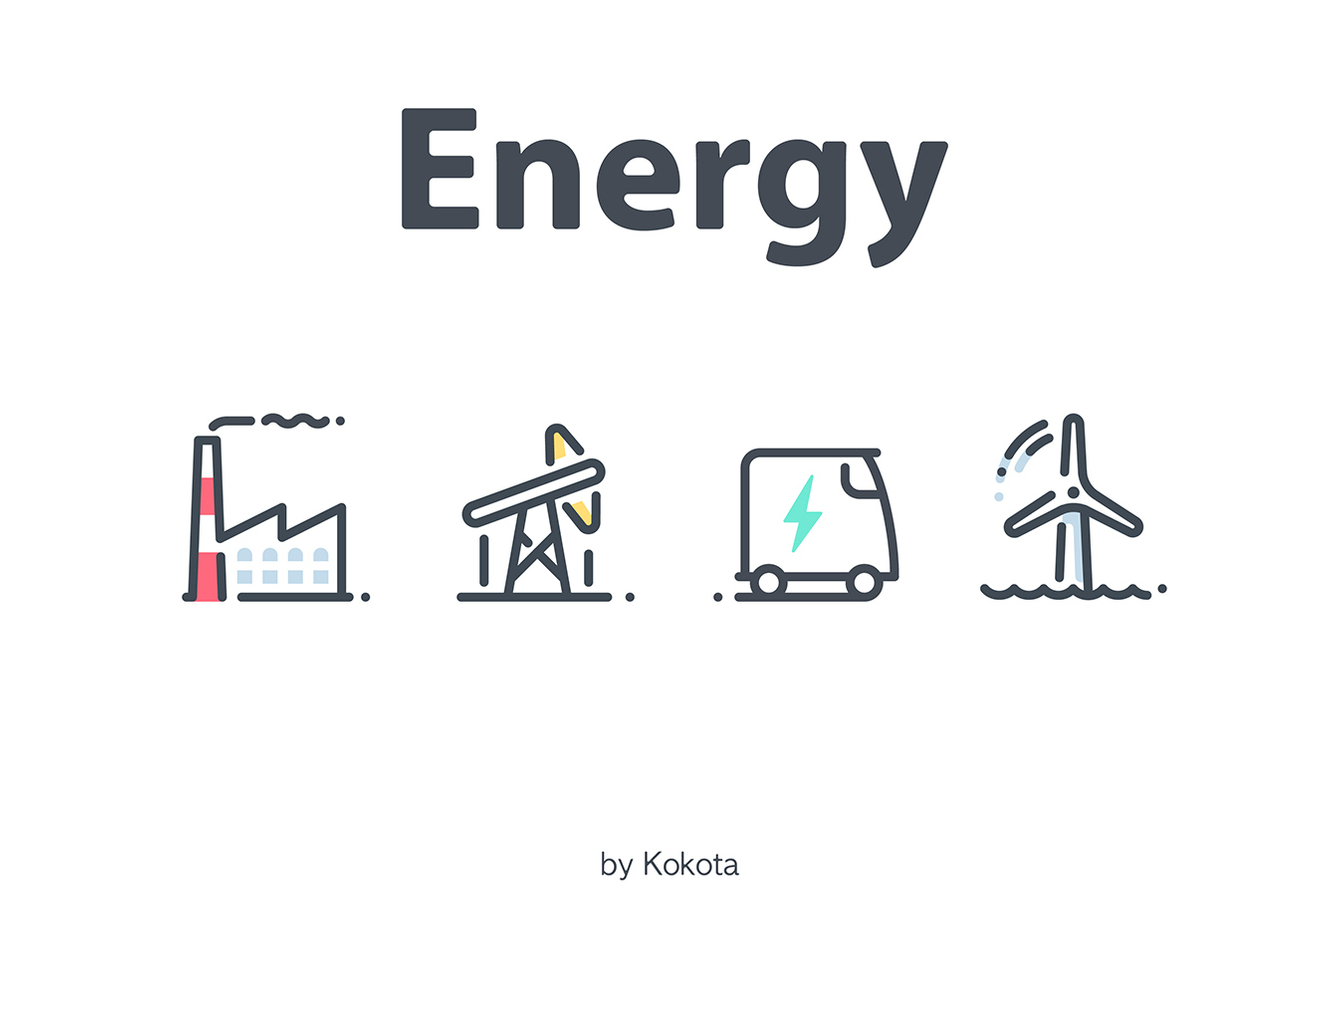 28个能源主题的矢量线条图标 28 Vector Energy Icons插图